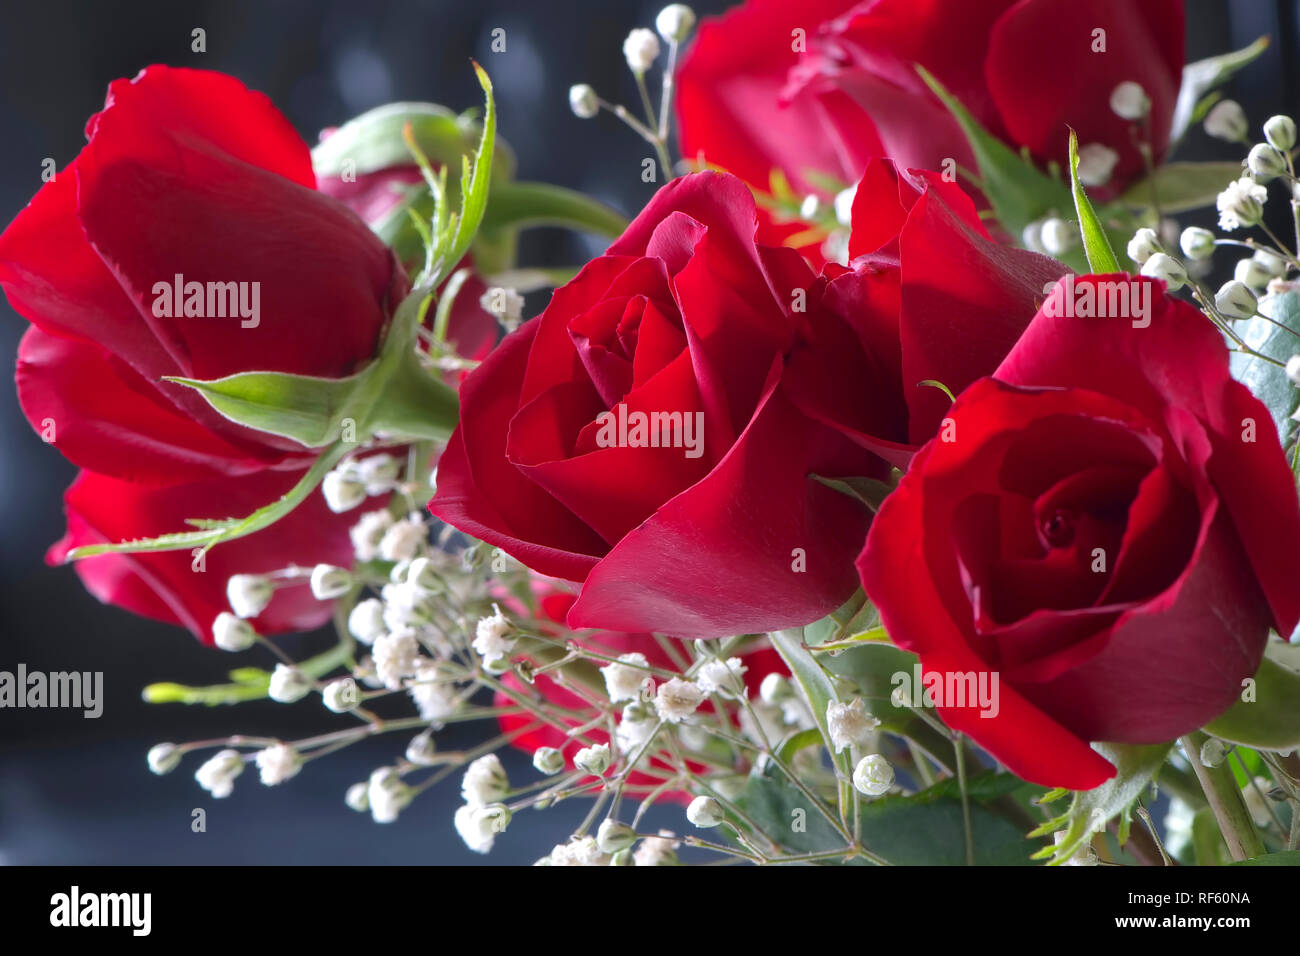 Rose Rosse Immagini E Fotos Stock Alamy